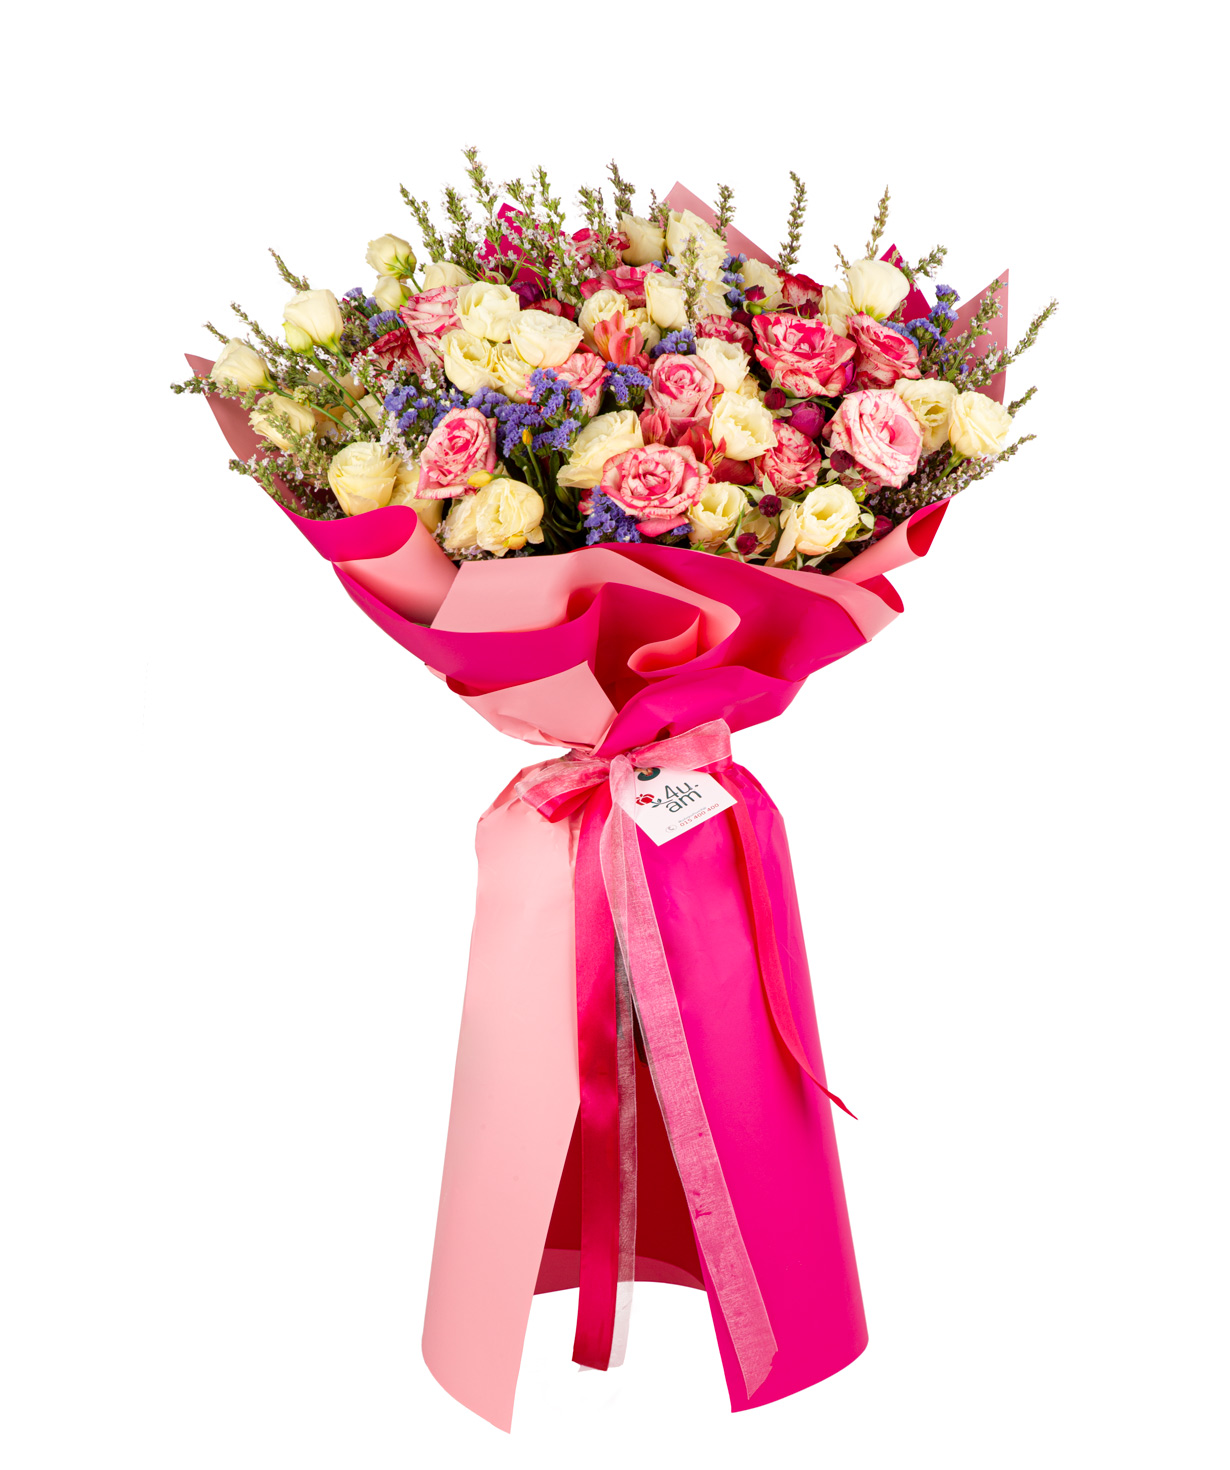 Ծաղկեփունջ «Ալոնդրա» վարդերով, փնջային վարդերով, լիզիանտուսներով և լիմոնիումներով